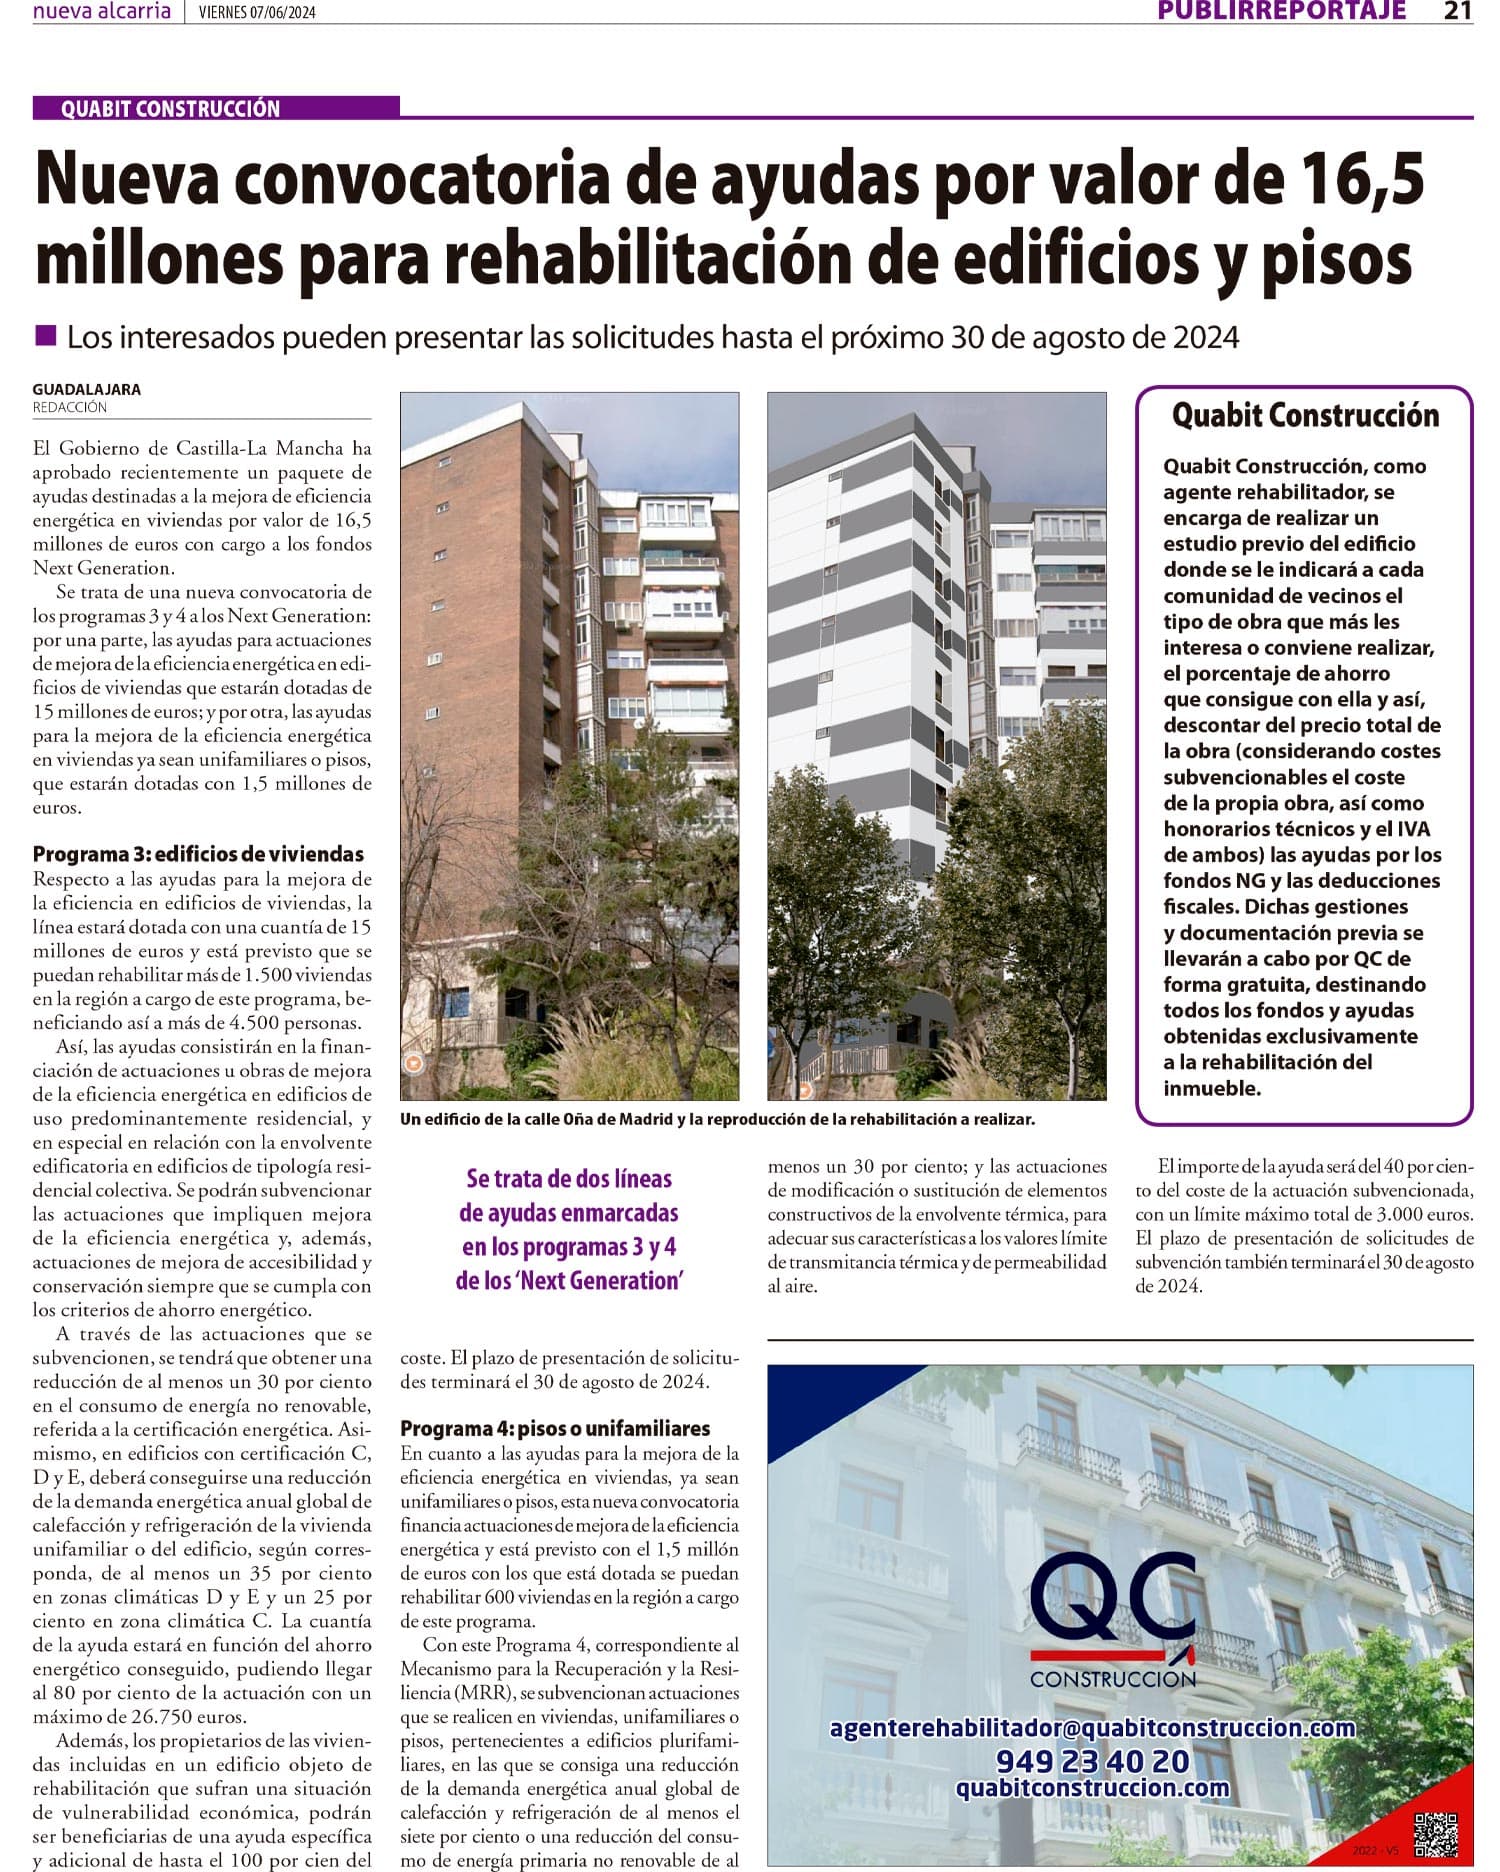 Nueva convocatoria de ayudas por valor de 16,5 millones para rehabilitación de edificios y pisos